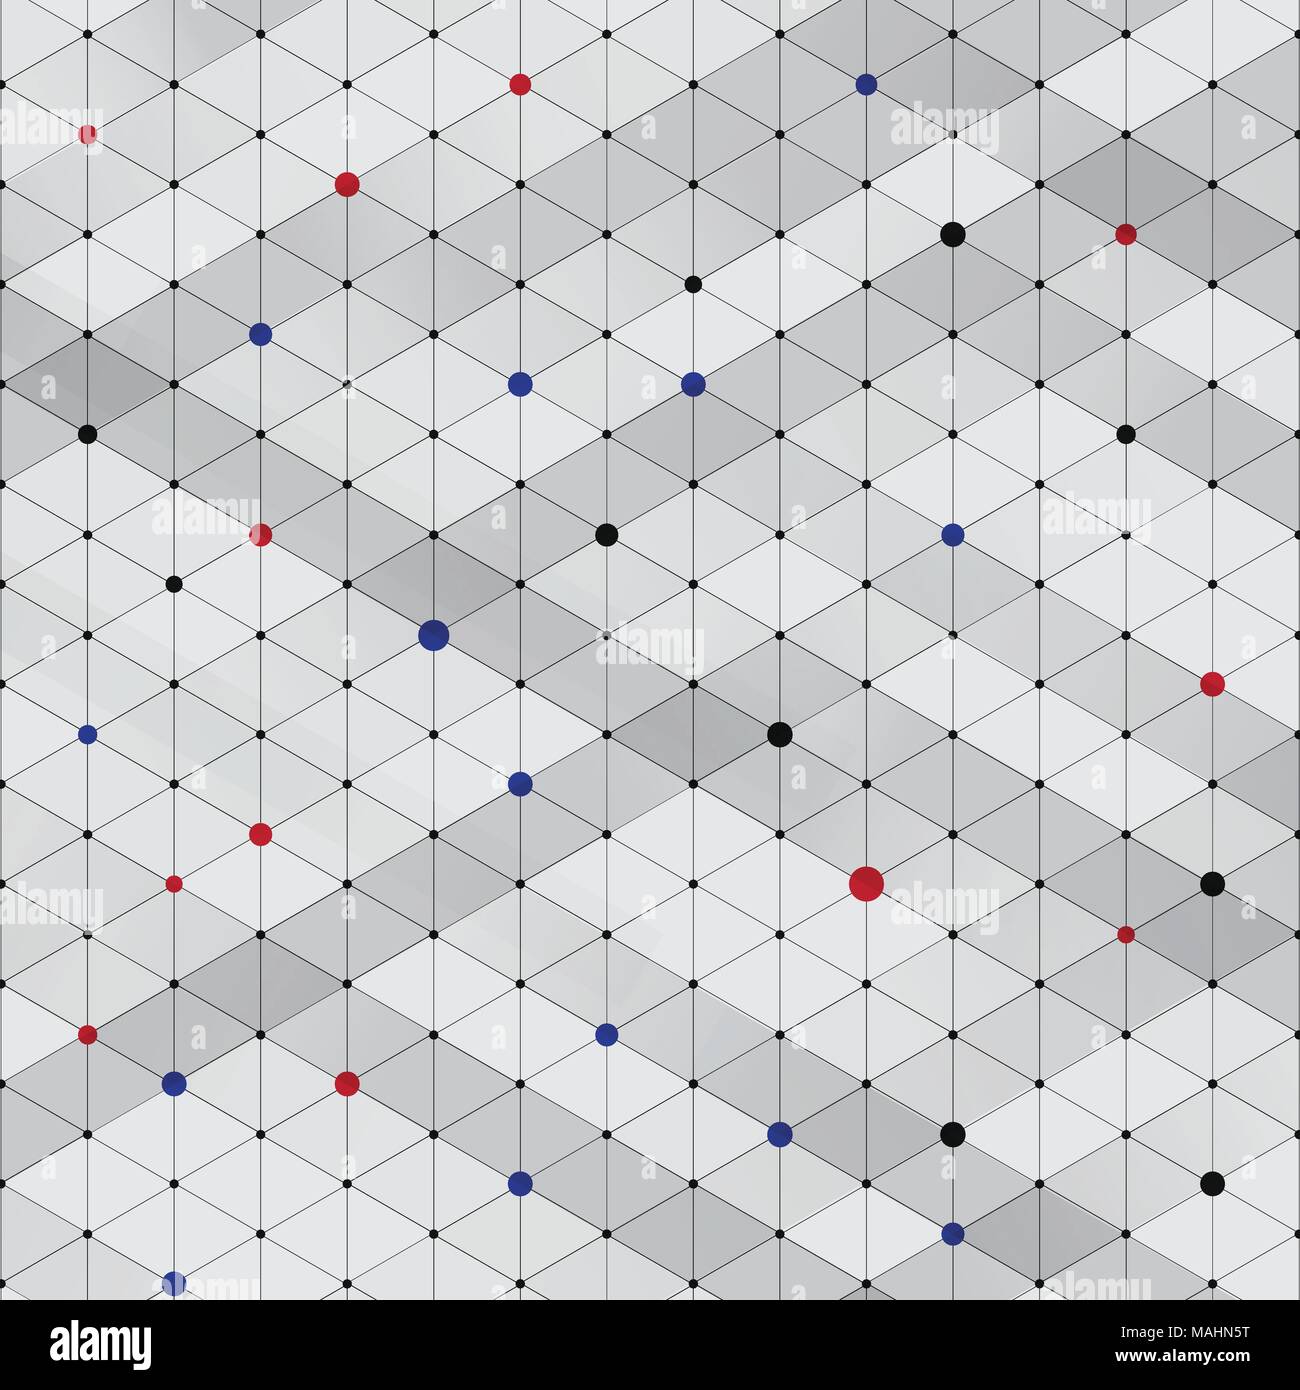 Abstrakte moderne stilvolle isometrische Muster Textur, drei-dimensionalen Rechteck, sich wiederholenden geometrischen Hintergrund mit Rot, Blau, Schwarz rhombus Kreise v Stock Vektor